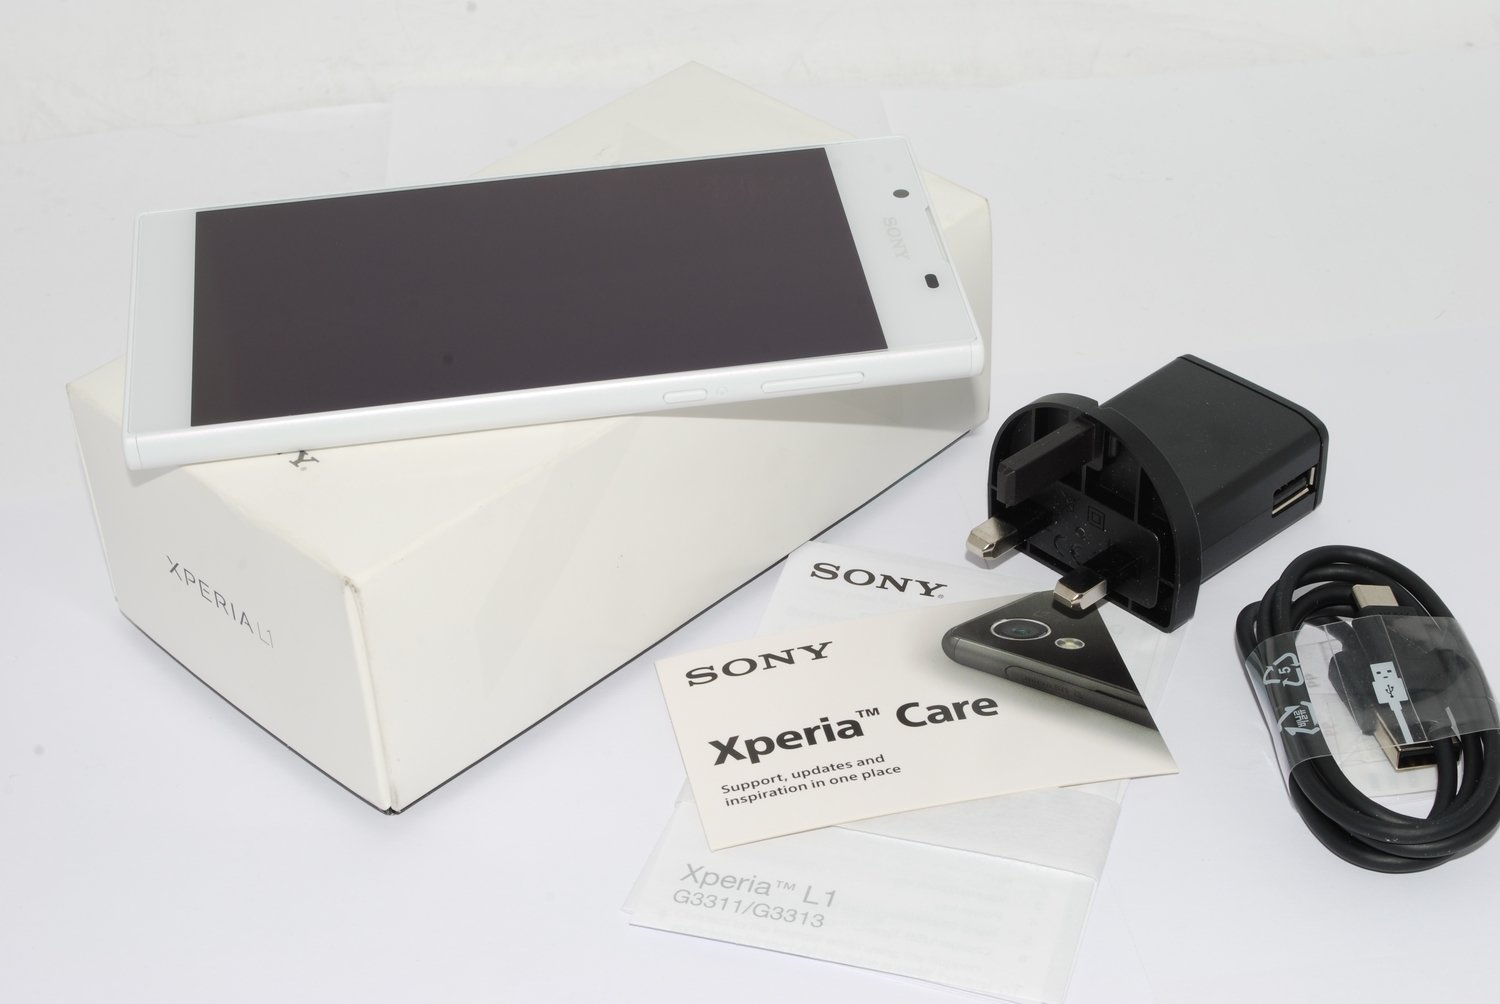 NEW SONY XPERIA L1 G3311 16GB - 13MP CAMERA  4G WHITE UNLOCKED UK STOCK